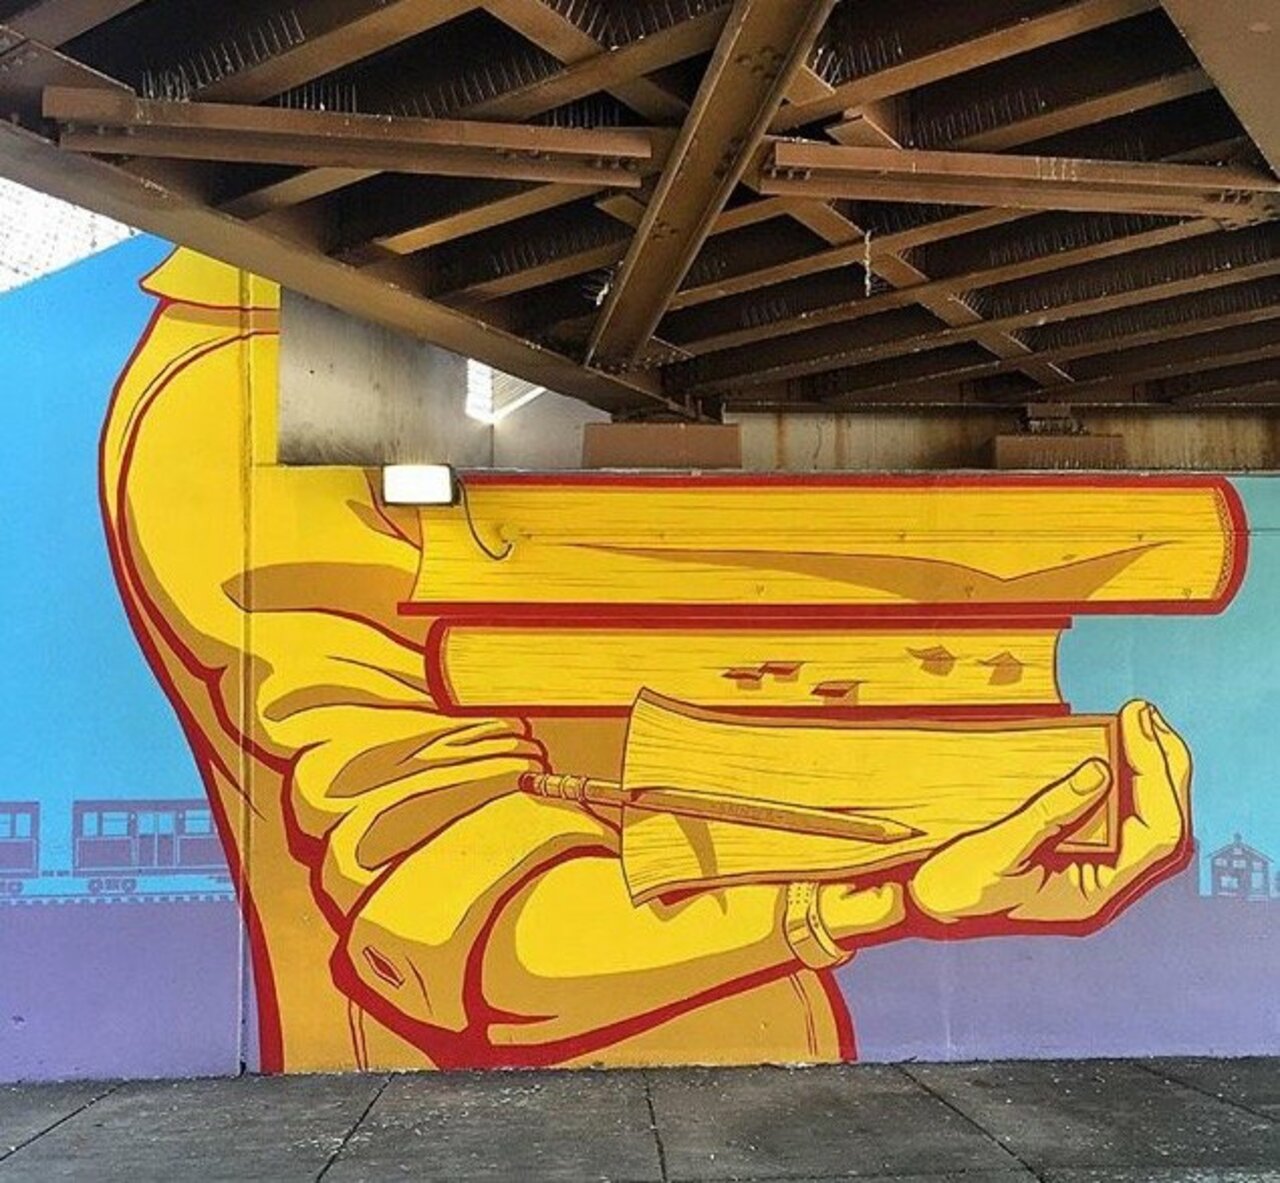 #Streetart #urbanart #graffiti #painting #mural by #artist Nick Goettling in Chicago, 2015 https://t.co/H60tFNh7Hb